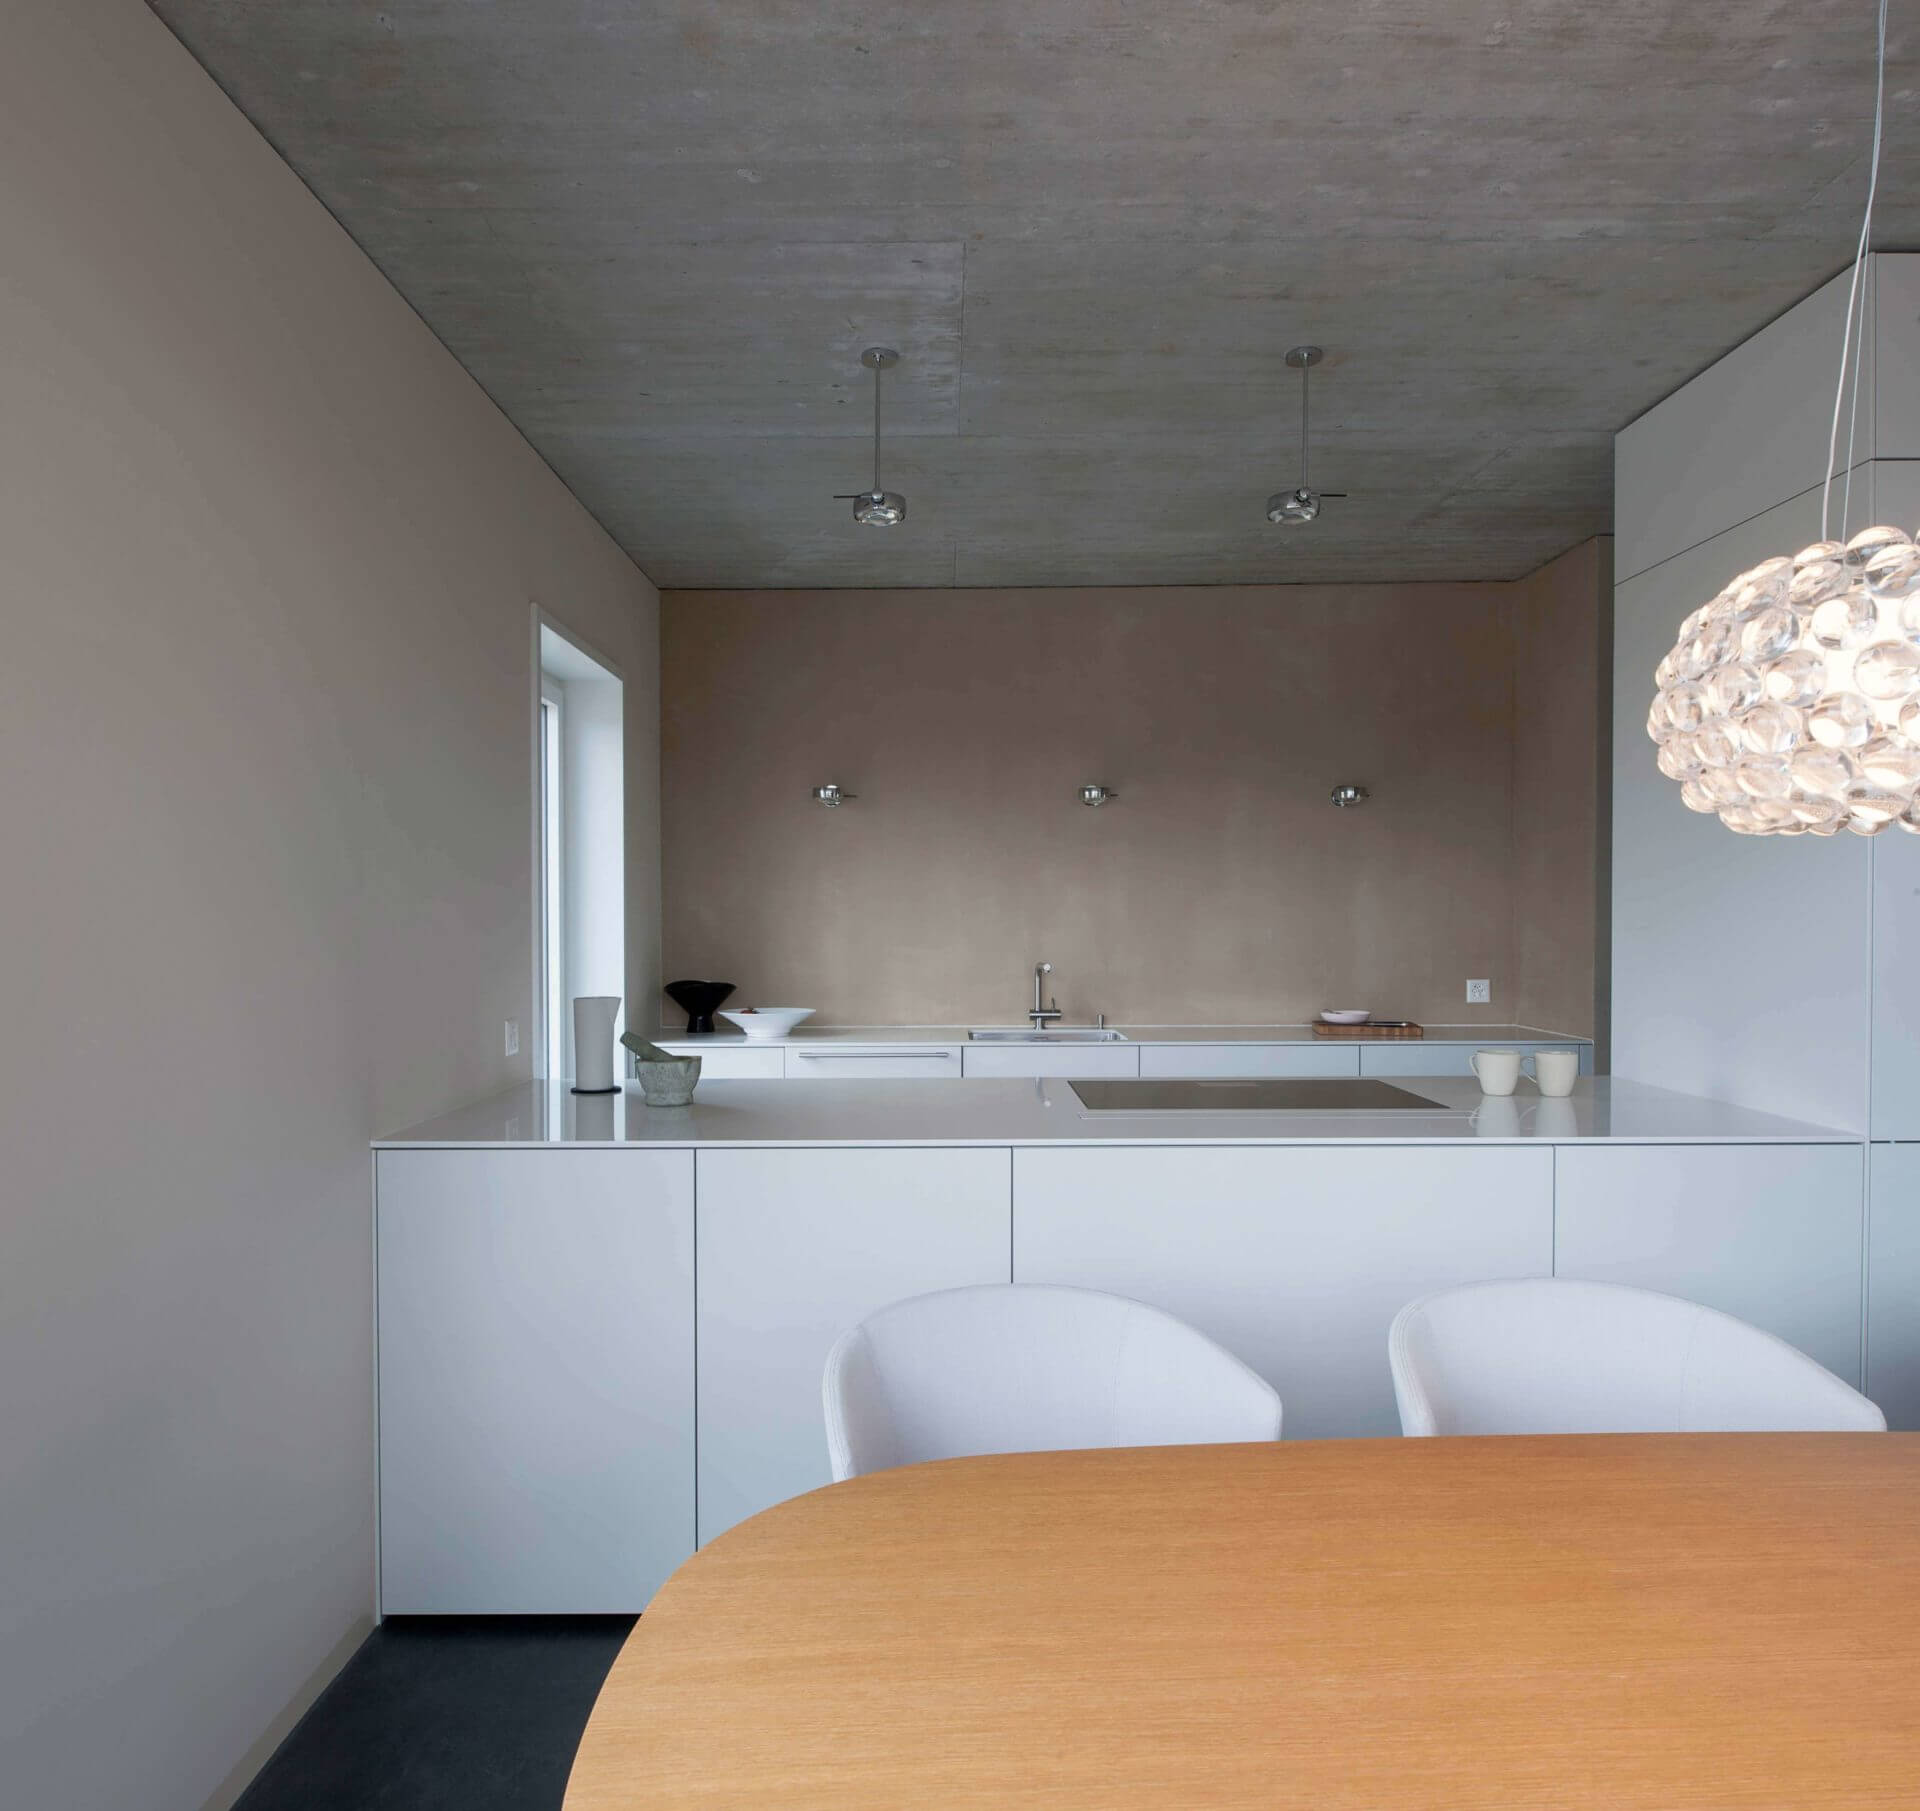 Urbane Einfachheit an der Aare.
Farb-, Material- und Einrichtungskonzept inklusive Beleuchtung Neubau Eigentumswohnung, Muri bei Bern